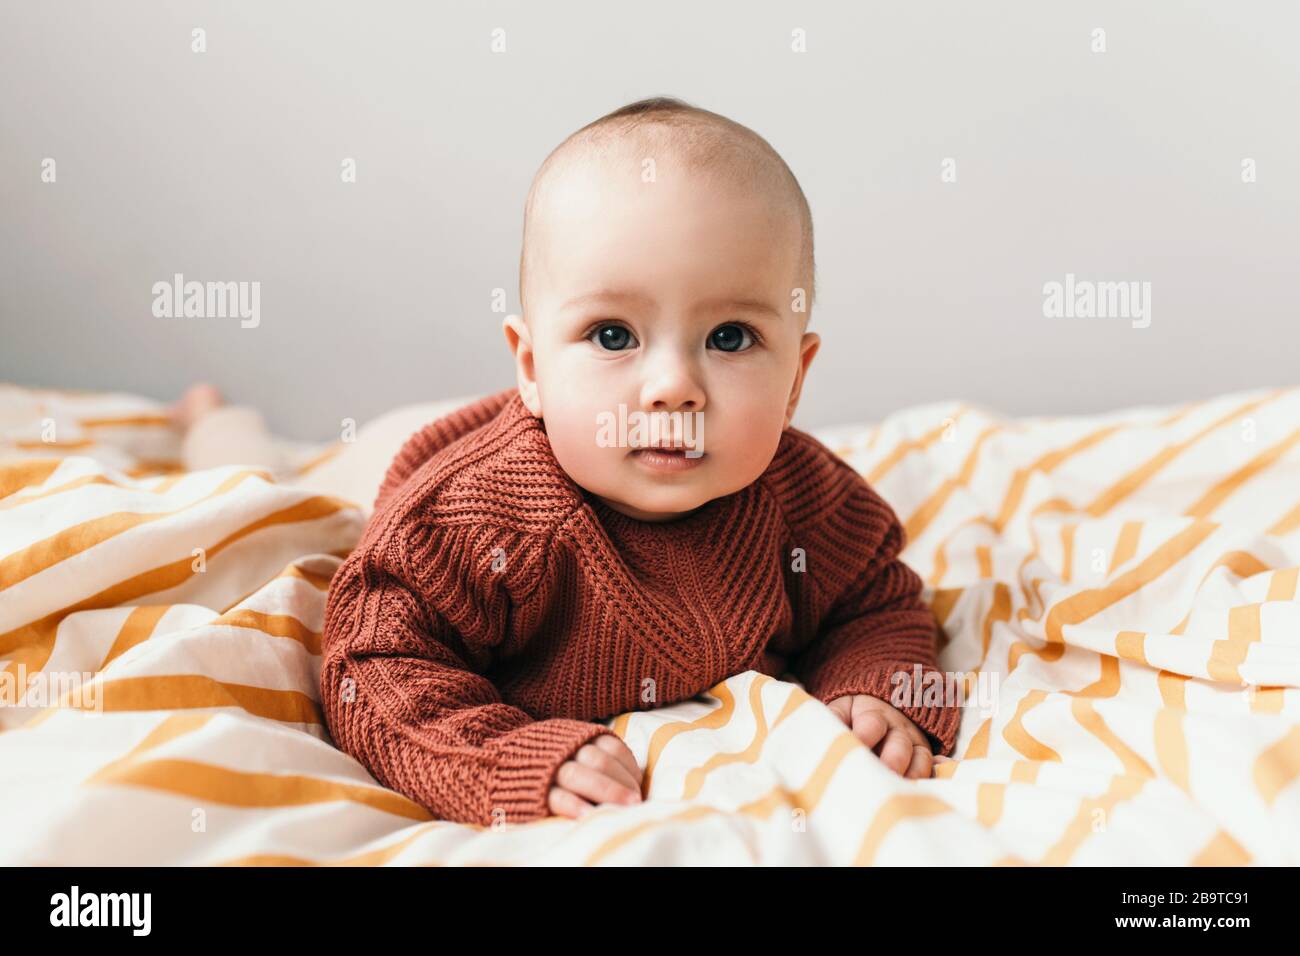 Belle petite fille de bébé sur le lit dans un confortable pull brun souriant. Concept de maternité et d'enfance. Adorable petite fille de six mois posée sur le mauvais et regardant dans l'appareil photo. Banque D'Images